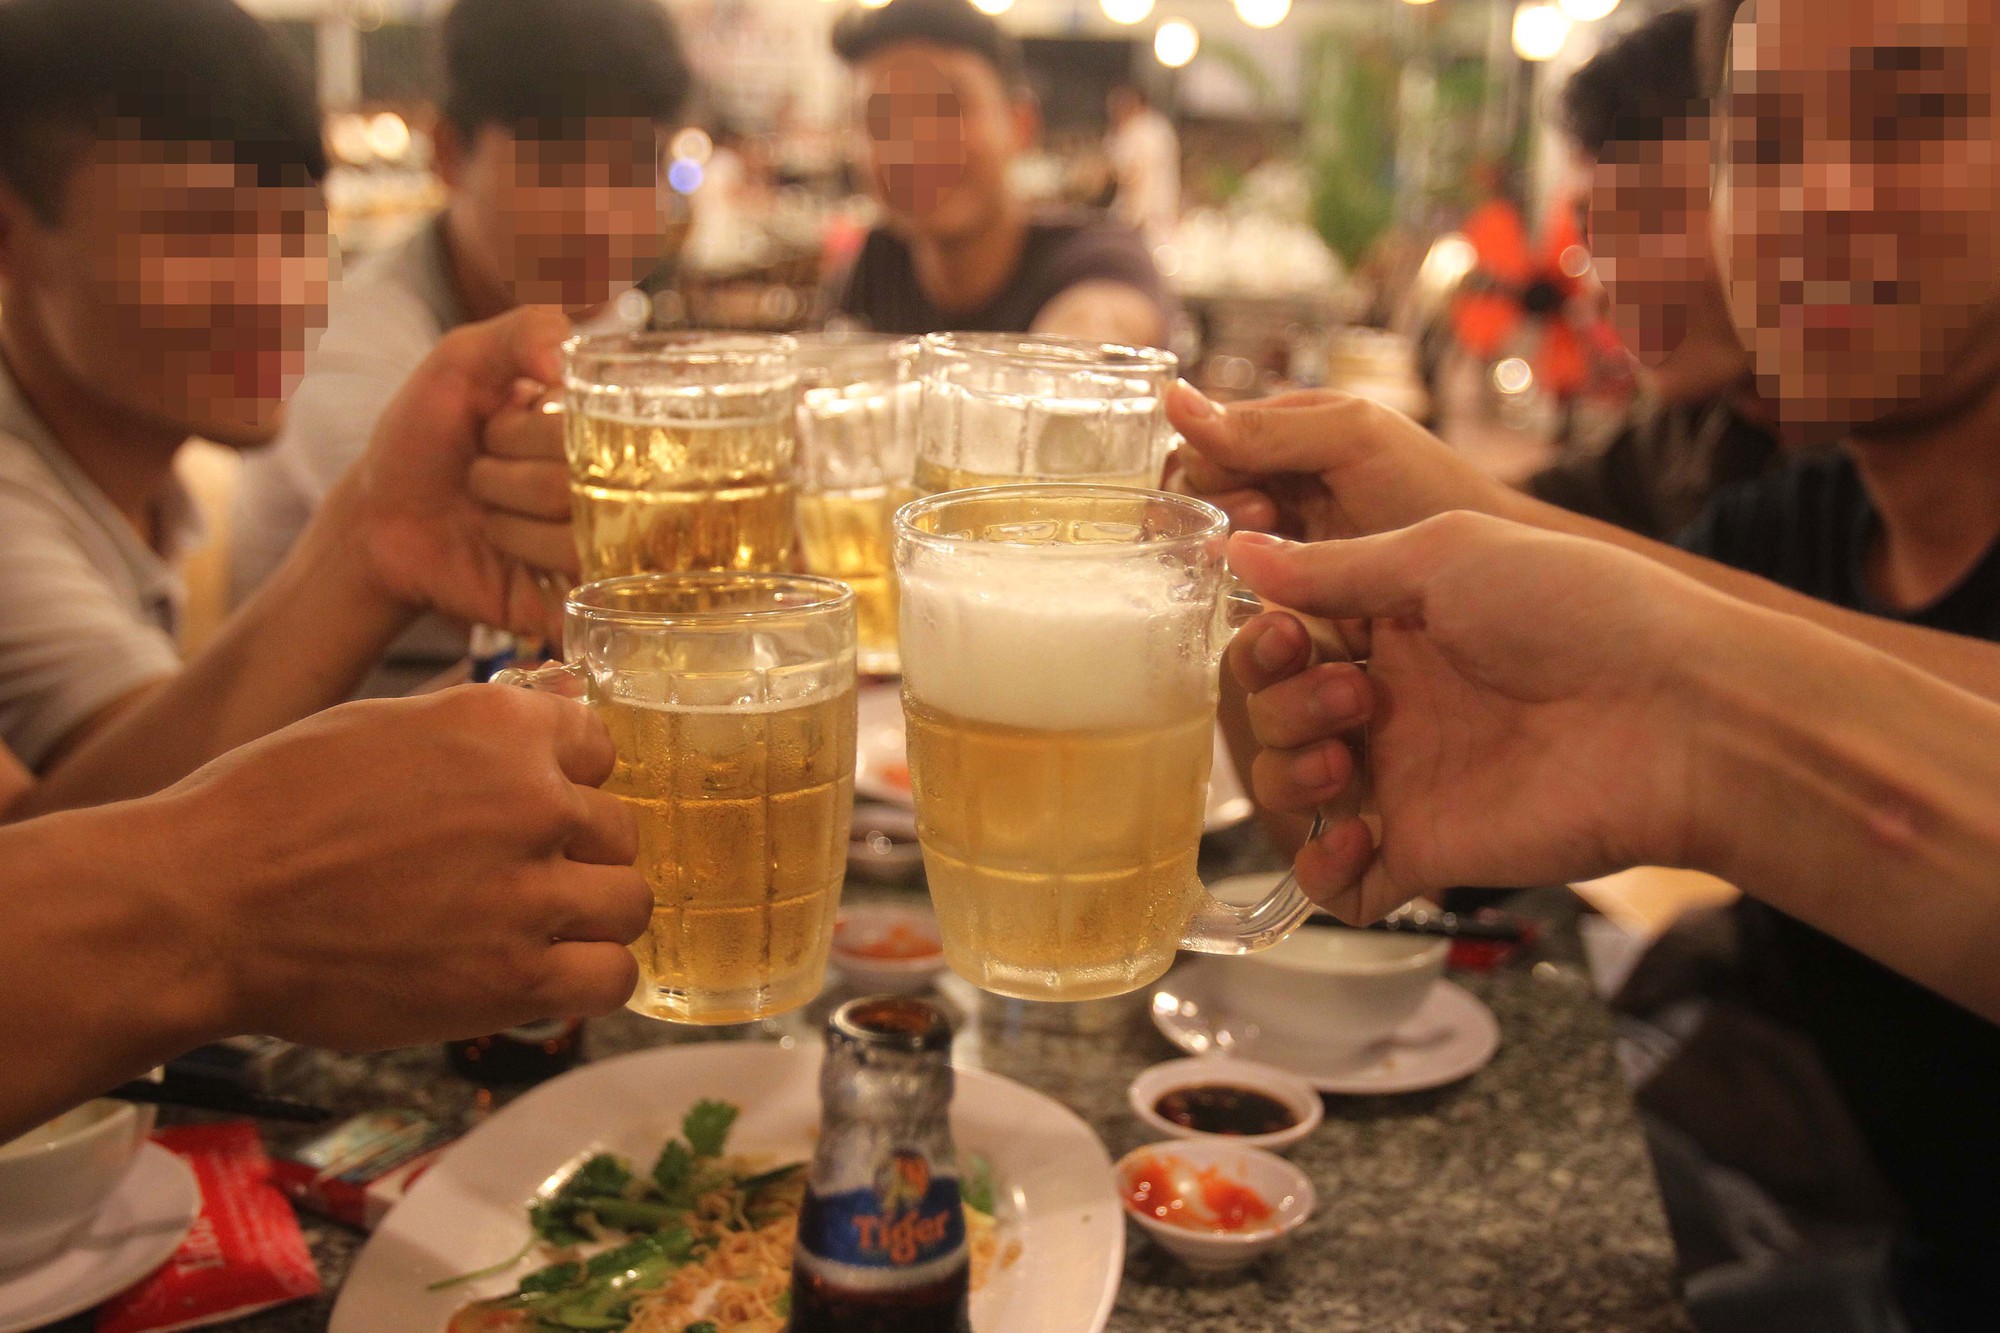 Cường quốc rượu bia: Với hơn 4.000 năm lịch sử sản xuất rượu bia, Việt Nam là một trong những cường quốc rượu bia hàng đầu tại khu vực Đông Nam Á. Tận hưởng hương vị độc đáo và vẻ đẹp tự nhiên của đất nước Việt Nam thông qua rượu bia, để tìm hiểu về văn hóa và lịch sử của đất nước này.